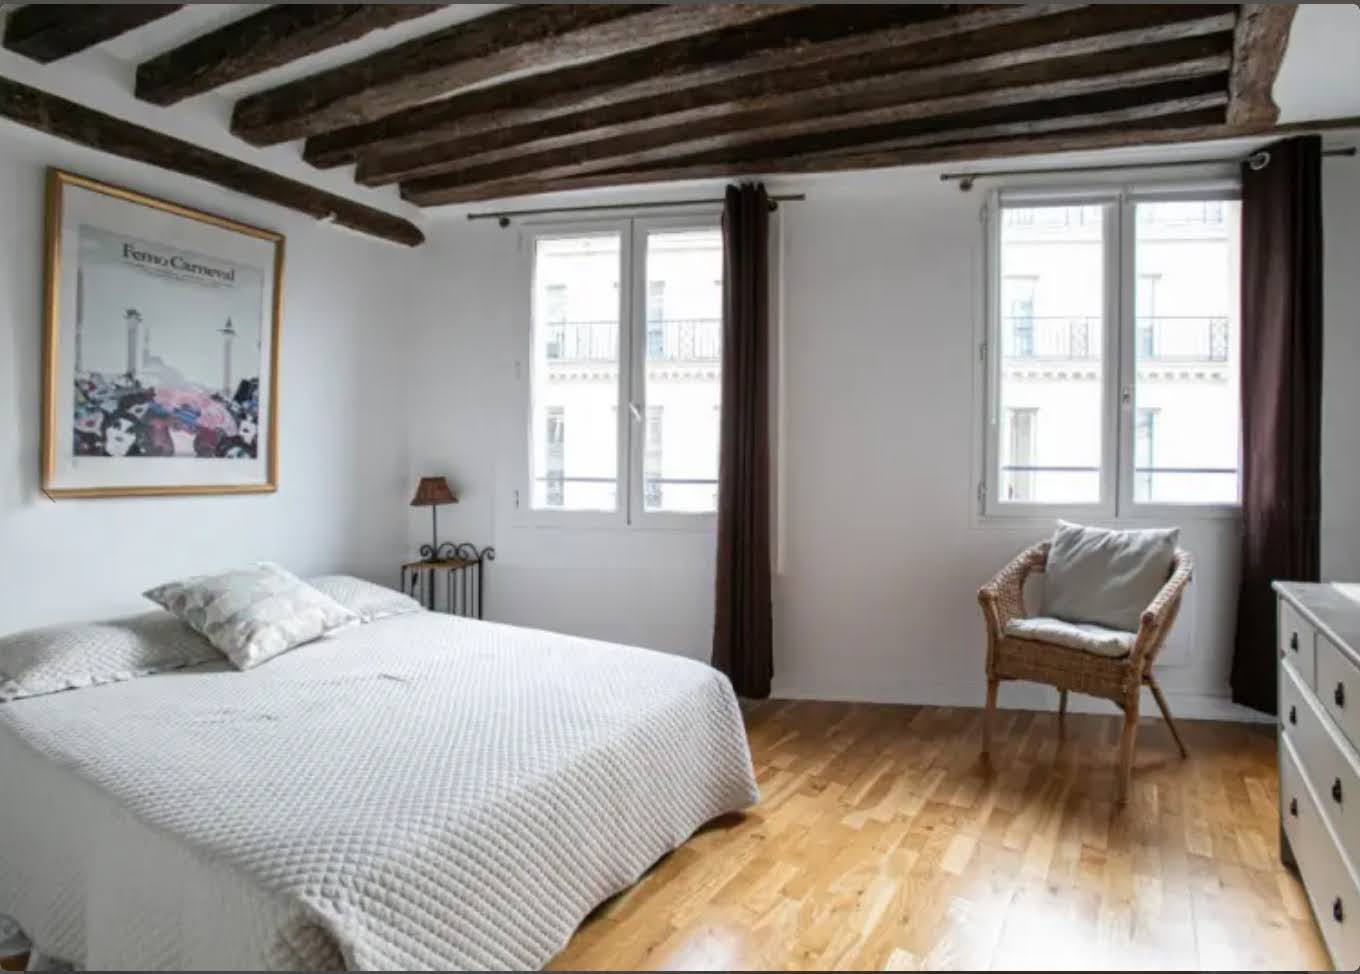 2 rue Jean Jacques Rousseau bedroom